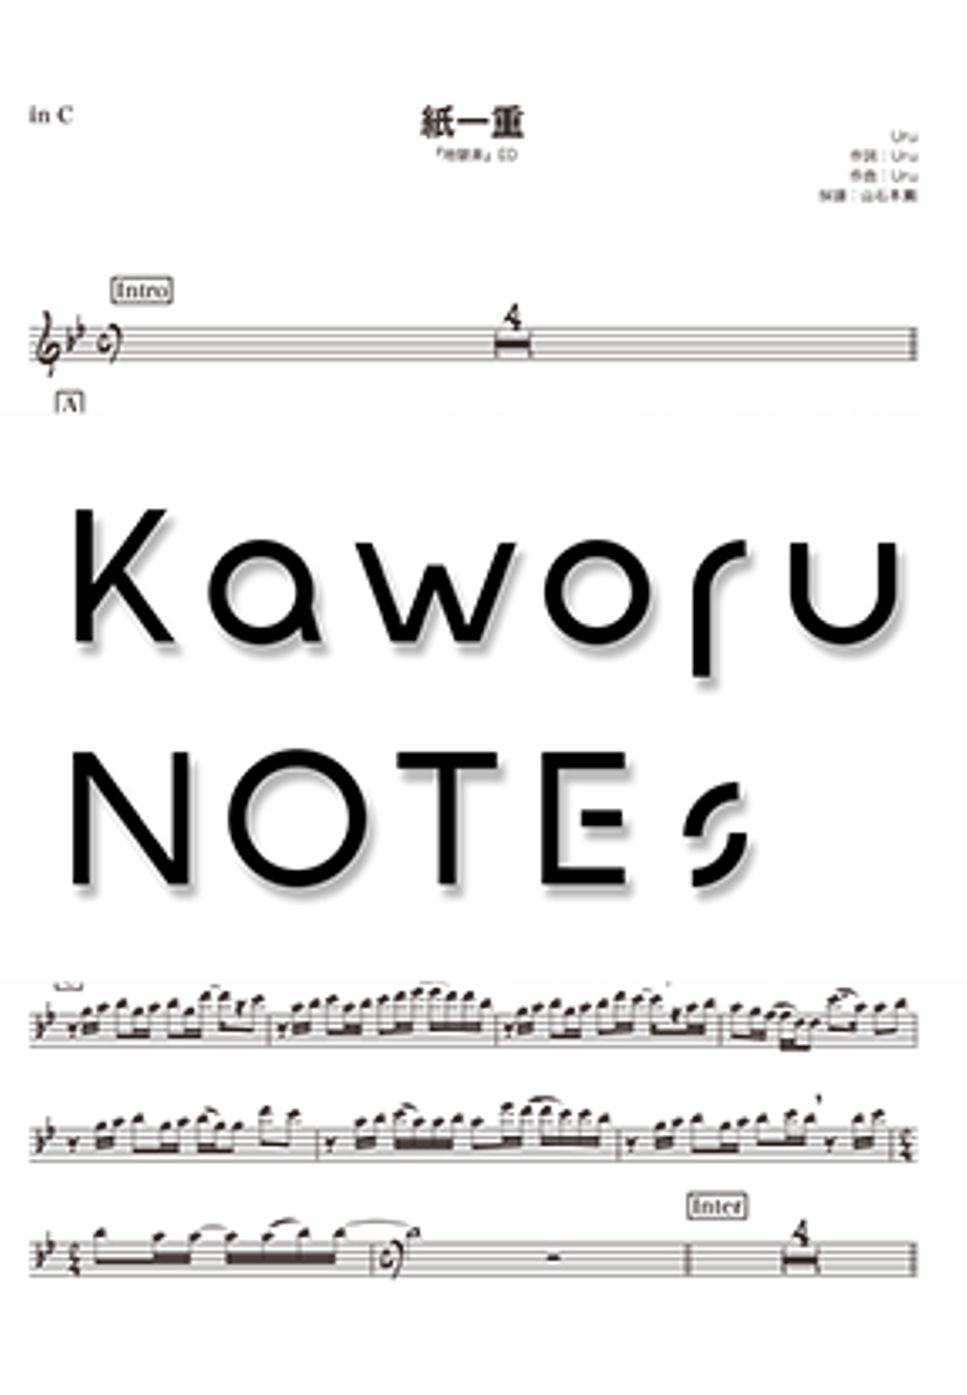 Uru - 纸一重（低音谱号《地狱乐》） by Kaworu NOTEs